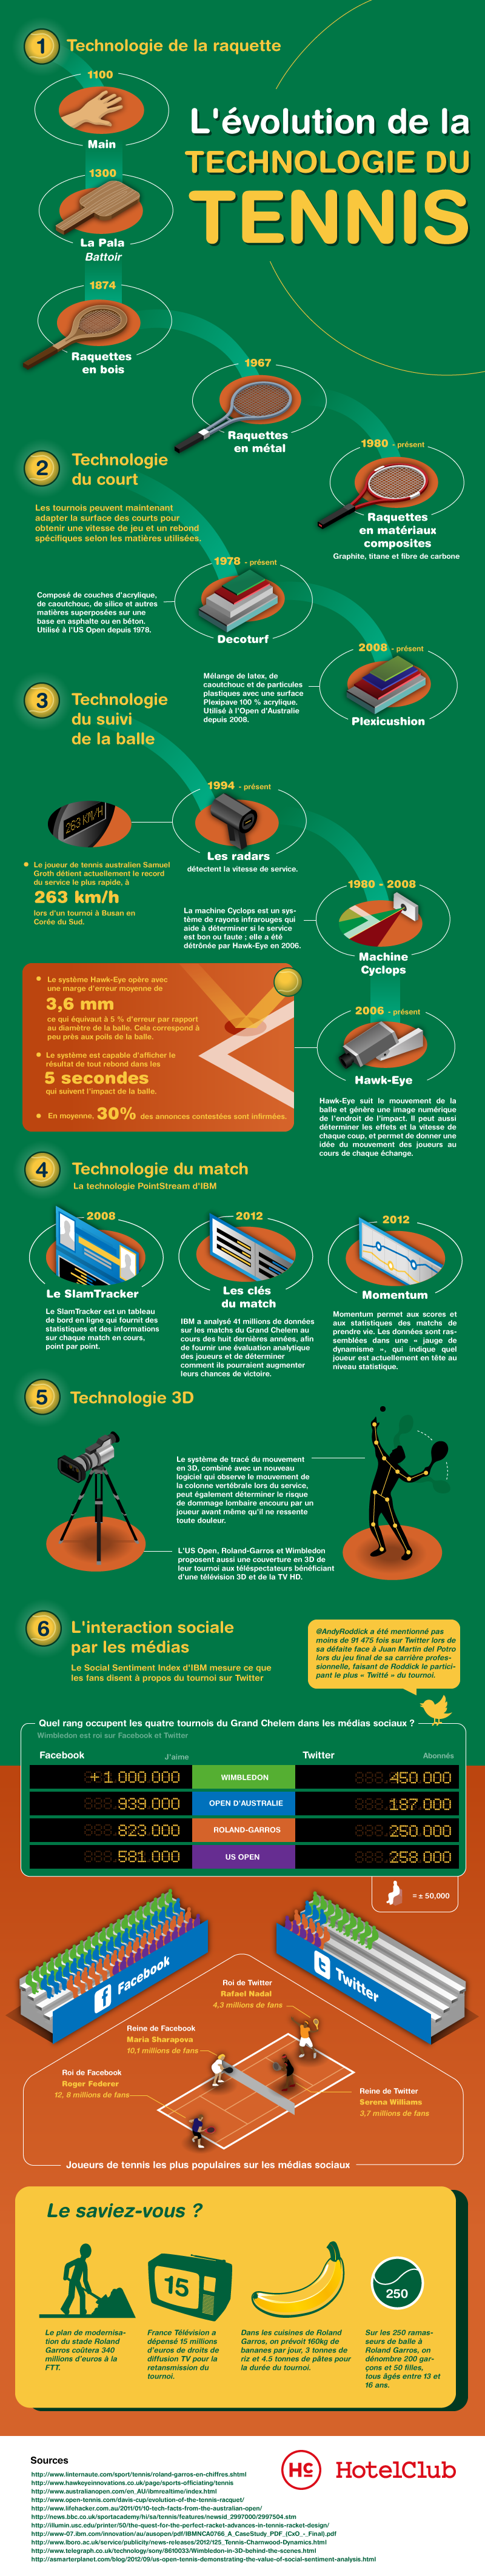 Tennis-Technology-Infographic-FR-roland garros 2013 réseaux sociaux infographie